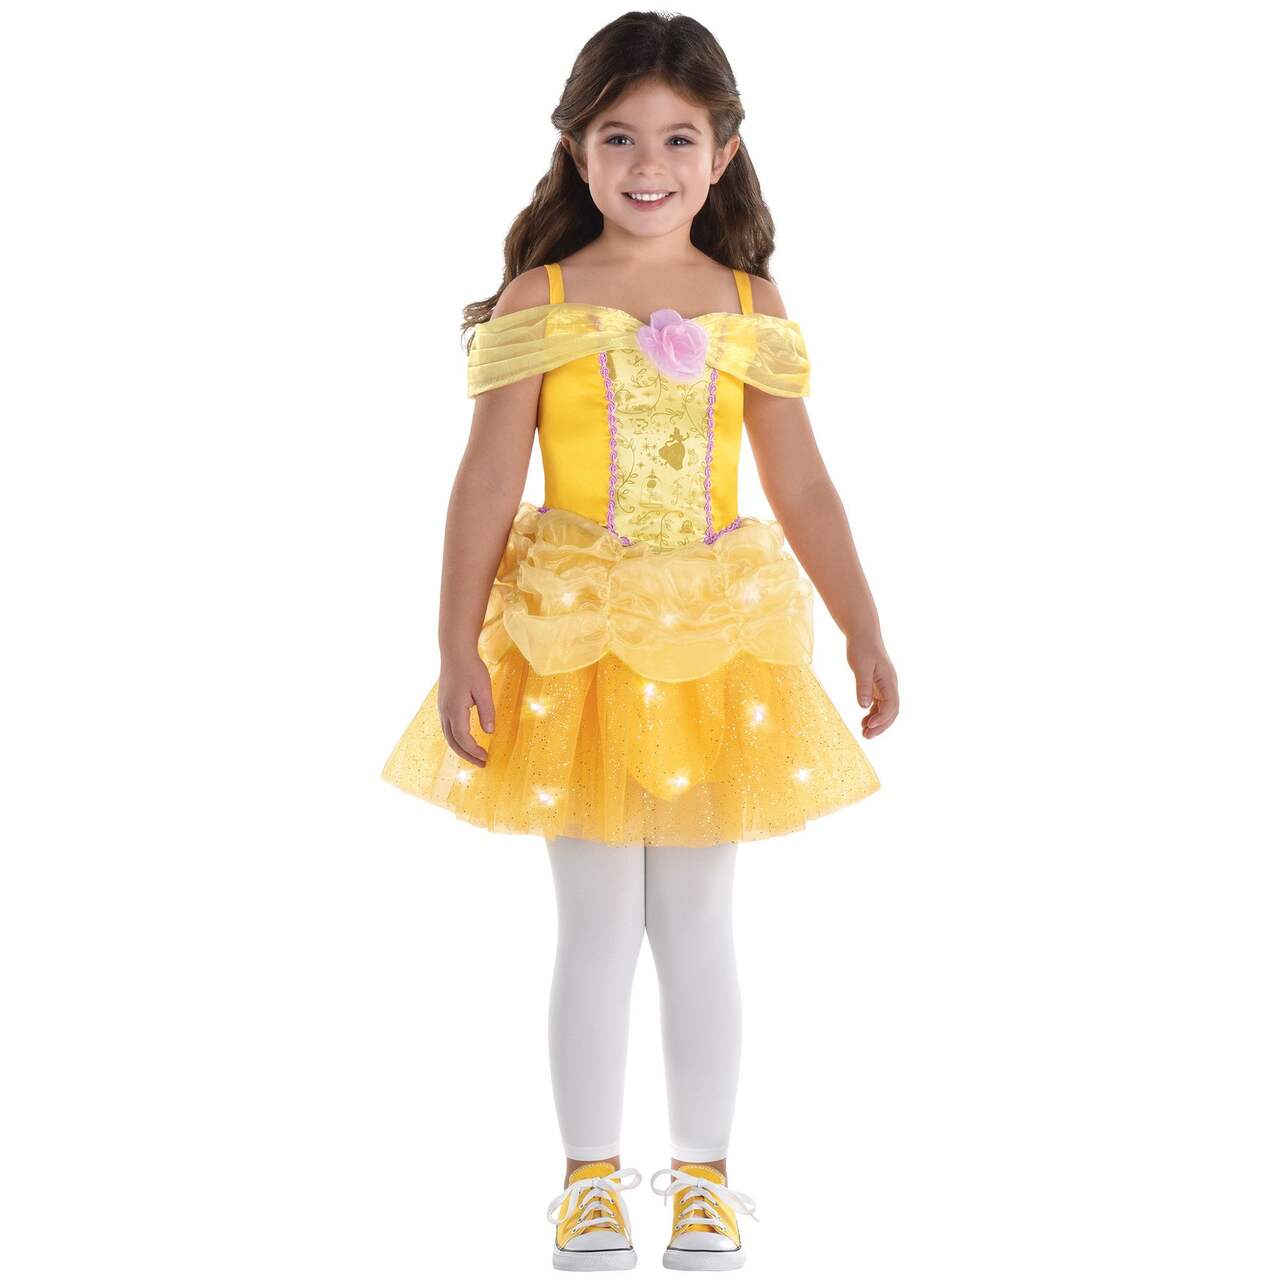 Costume de Belle Disney La Belle et la Bête, toute petite et enfant, robe  de princesse lumineuse jaune, choix de tailles